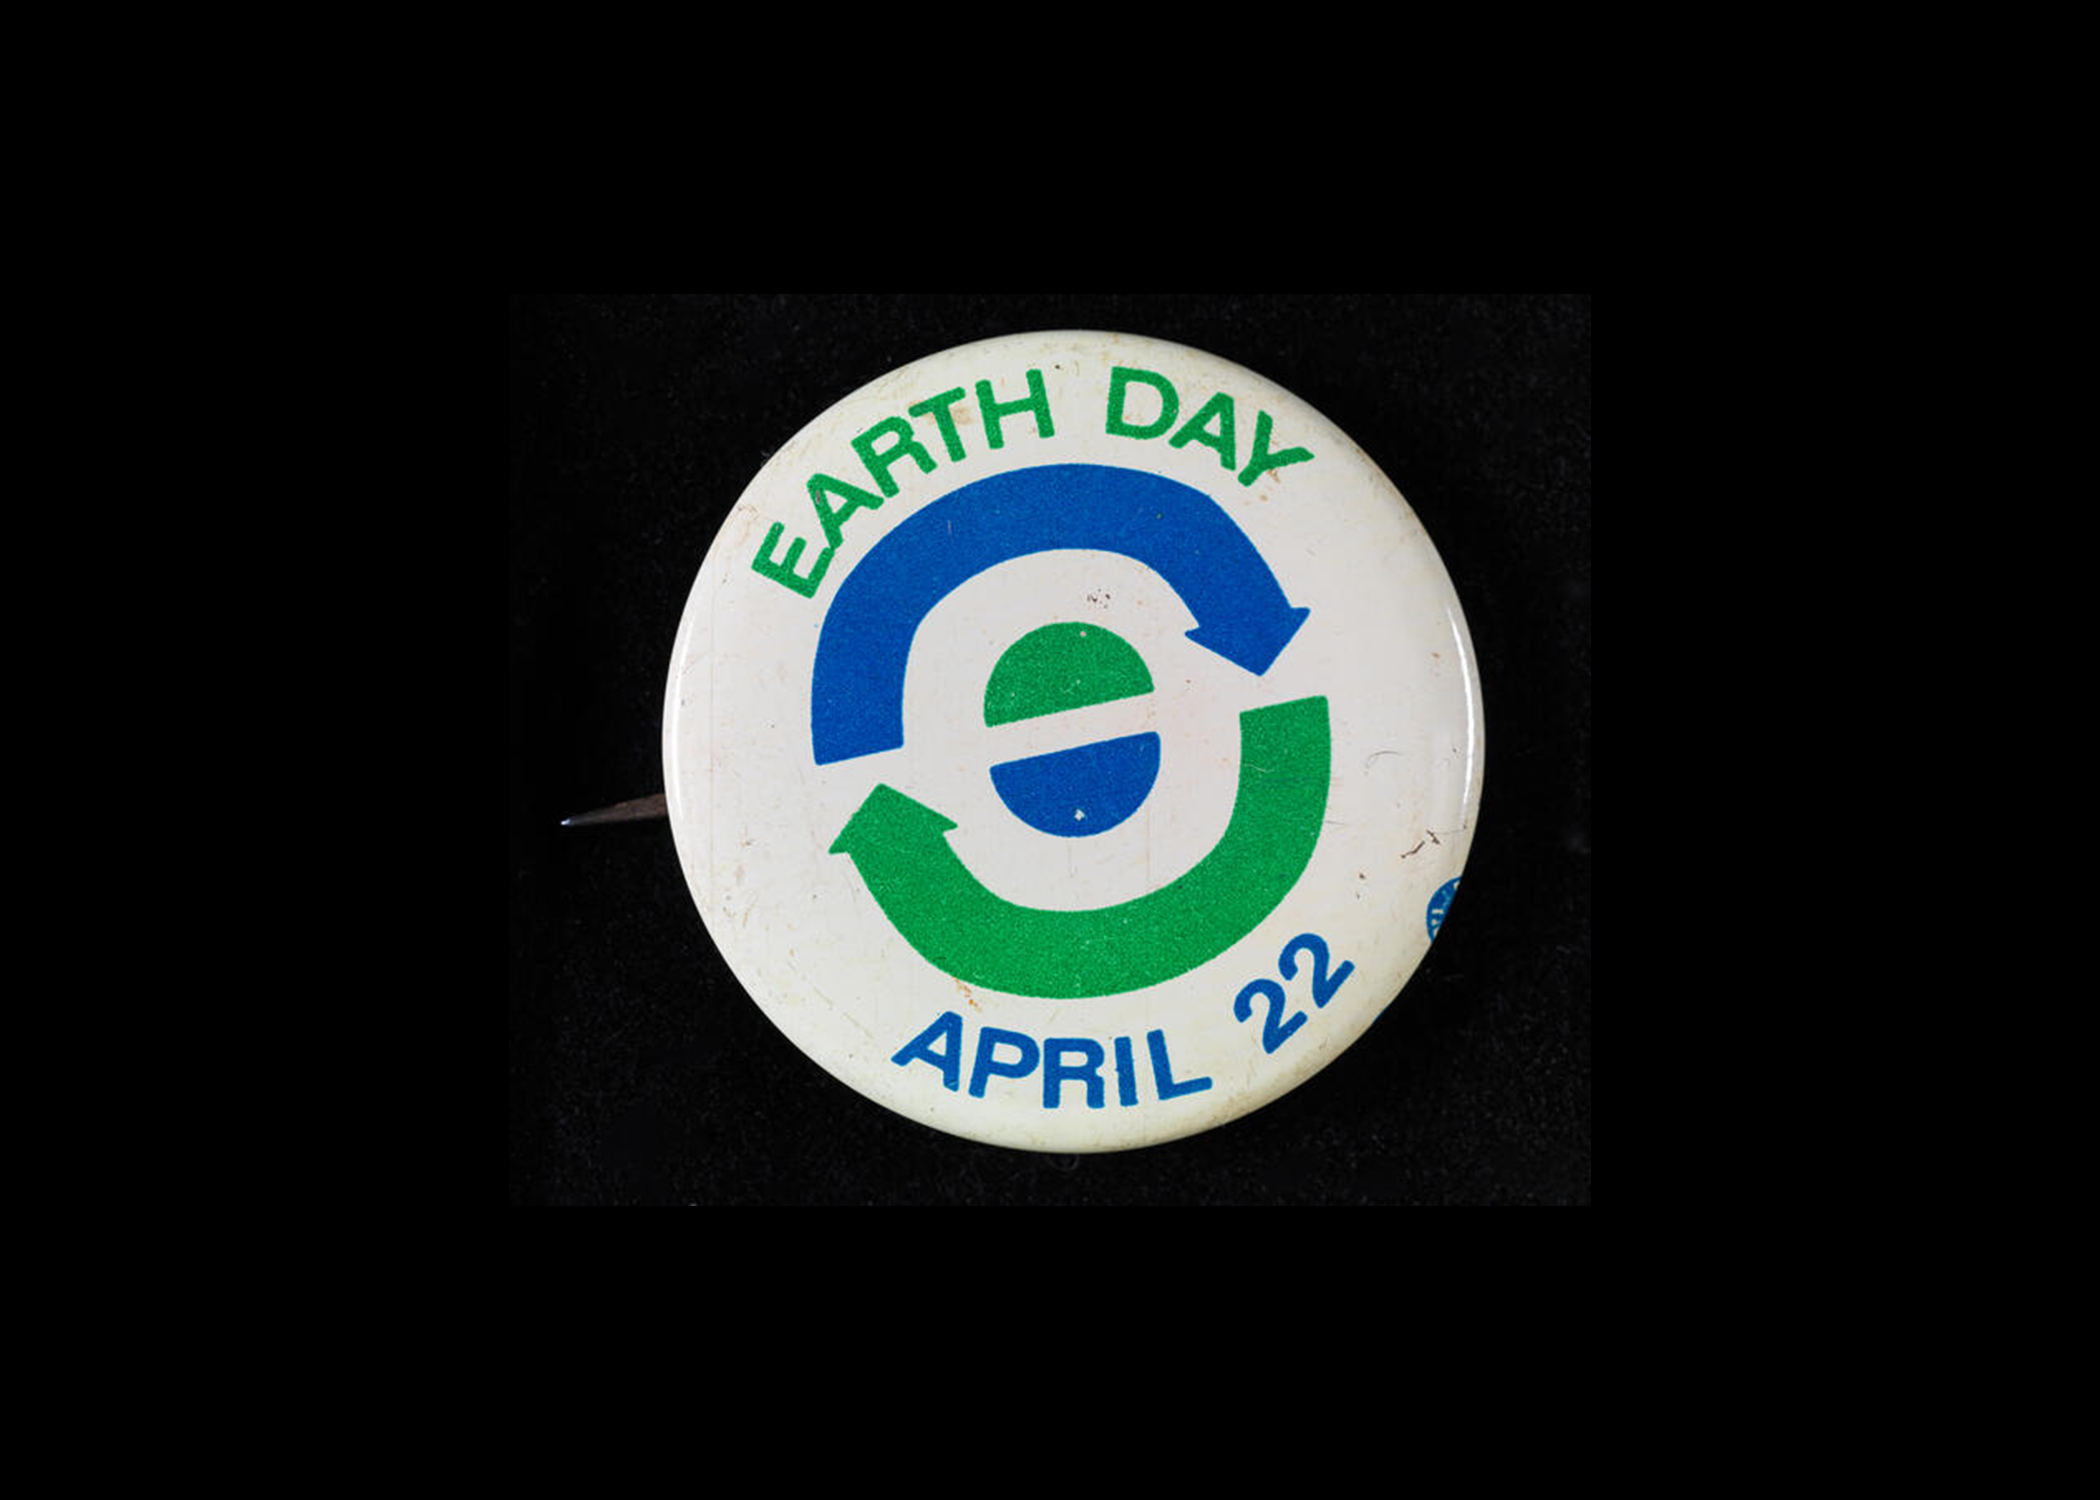 リサイクルと地球を象徴する青と緑の矢印と半円が付いたアースデー 22 月 XNUMX 日と書かれた白いボタン